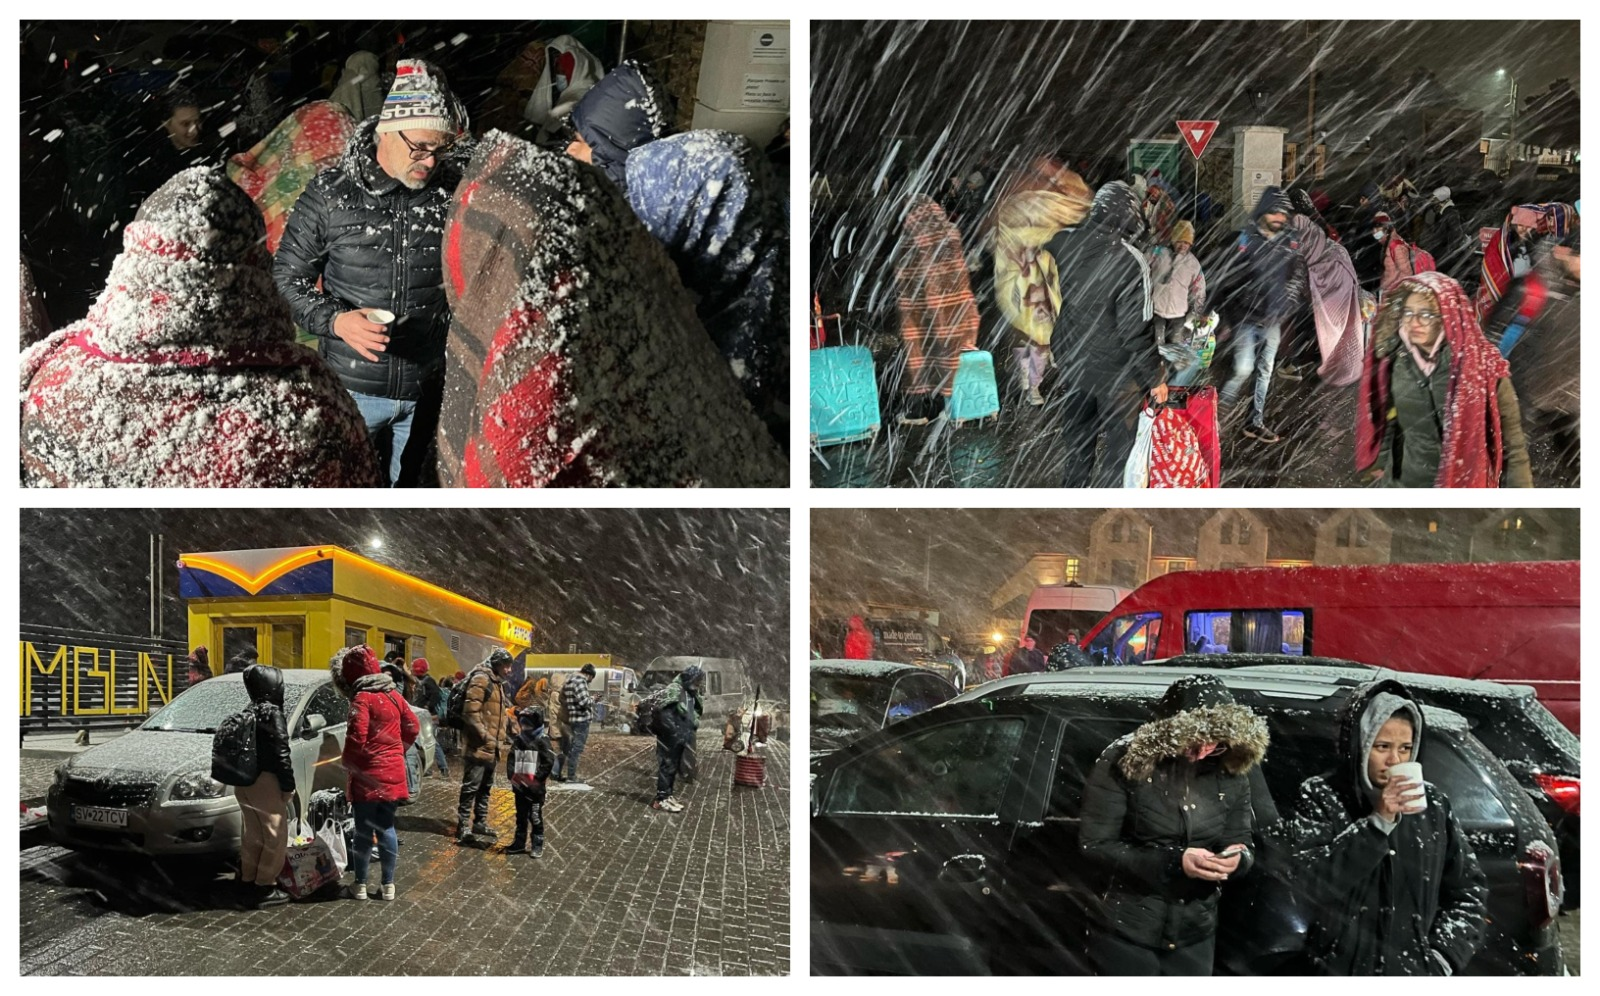 colaj cu refugiati ucraineni asteptand in ninsoare in Vama Siret